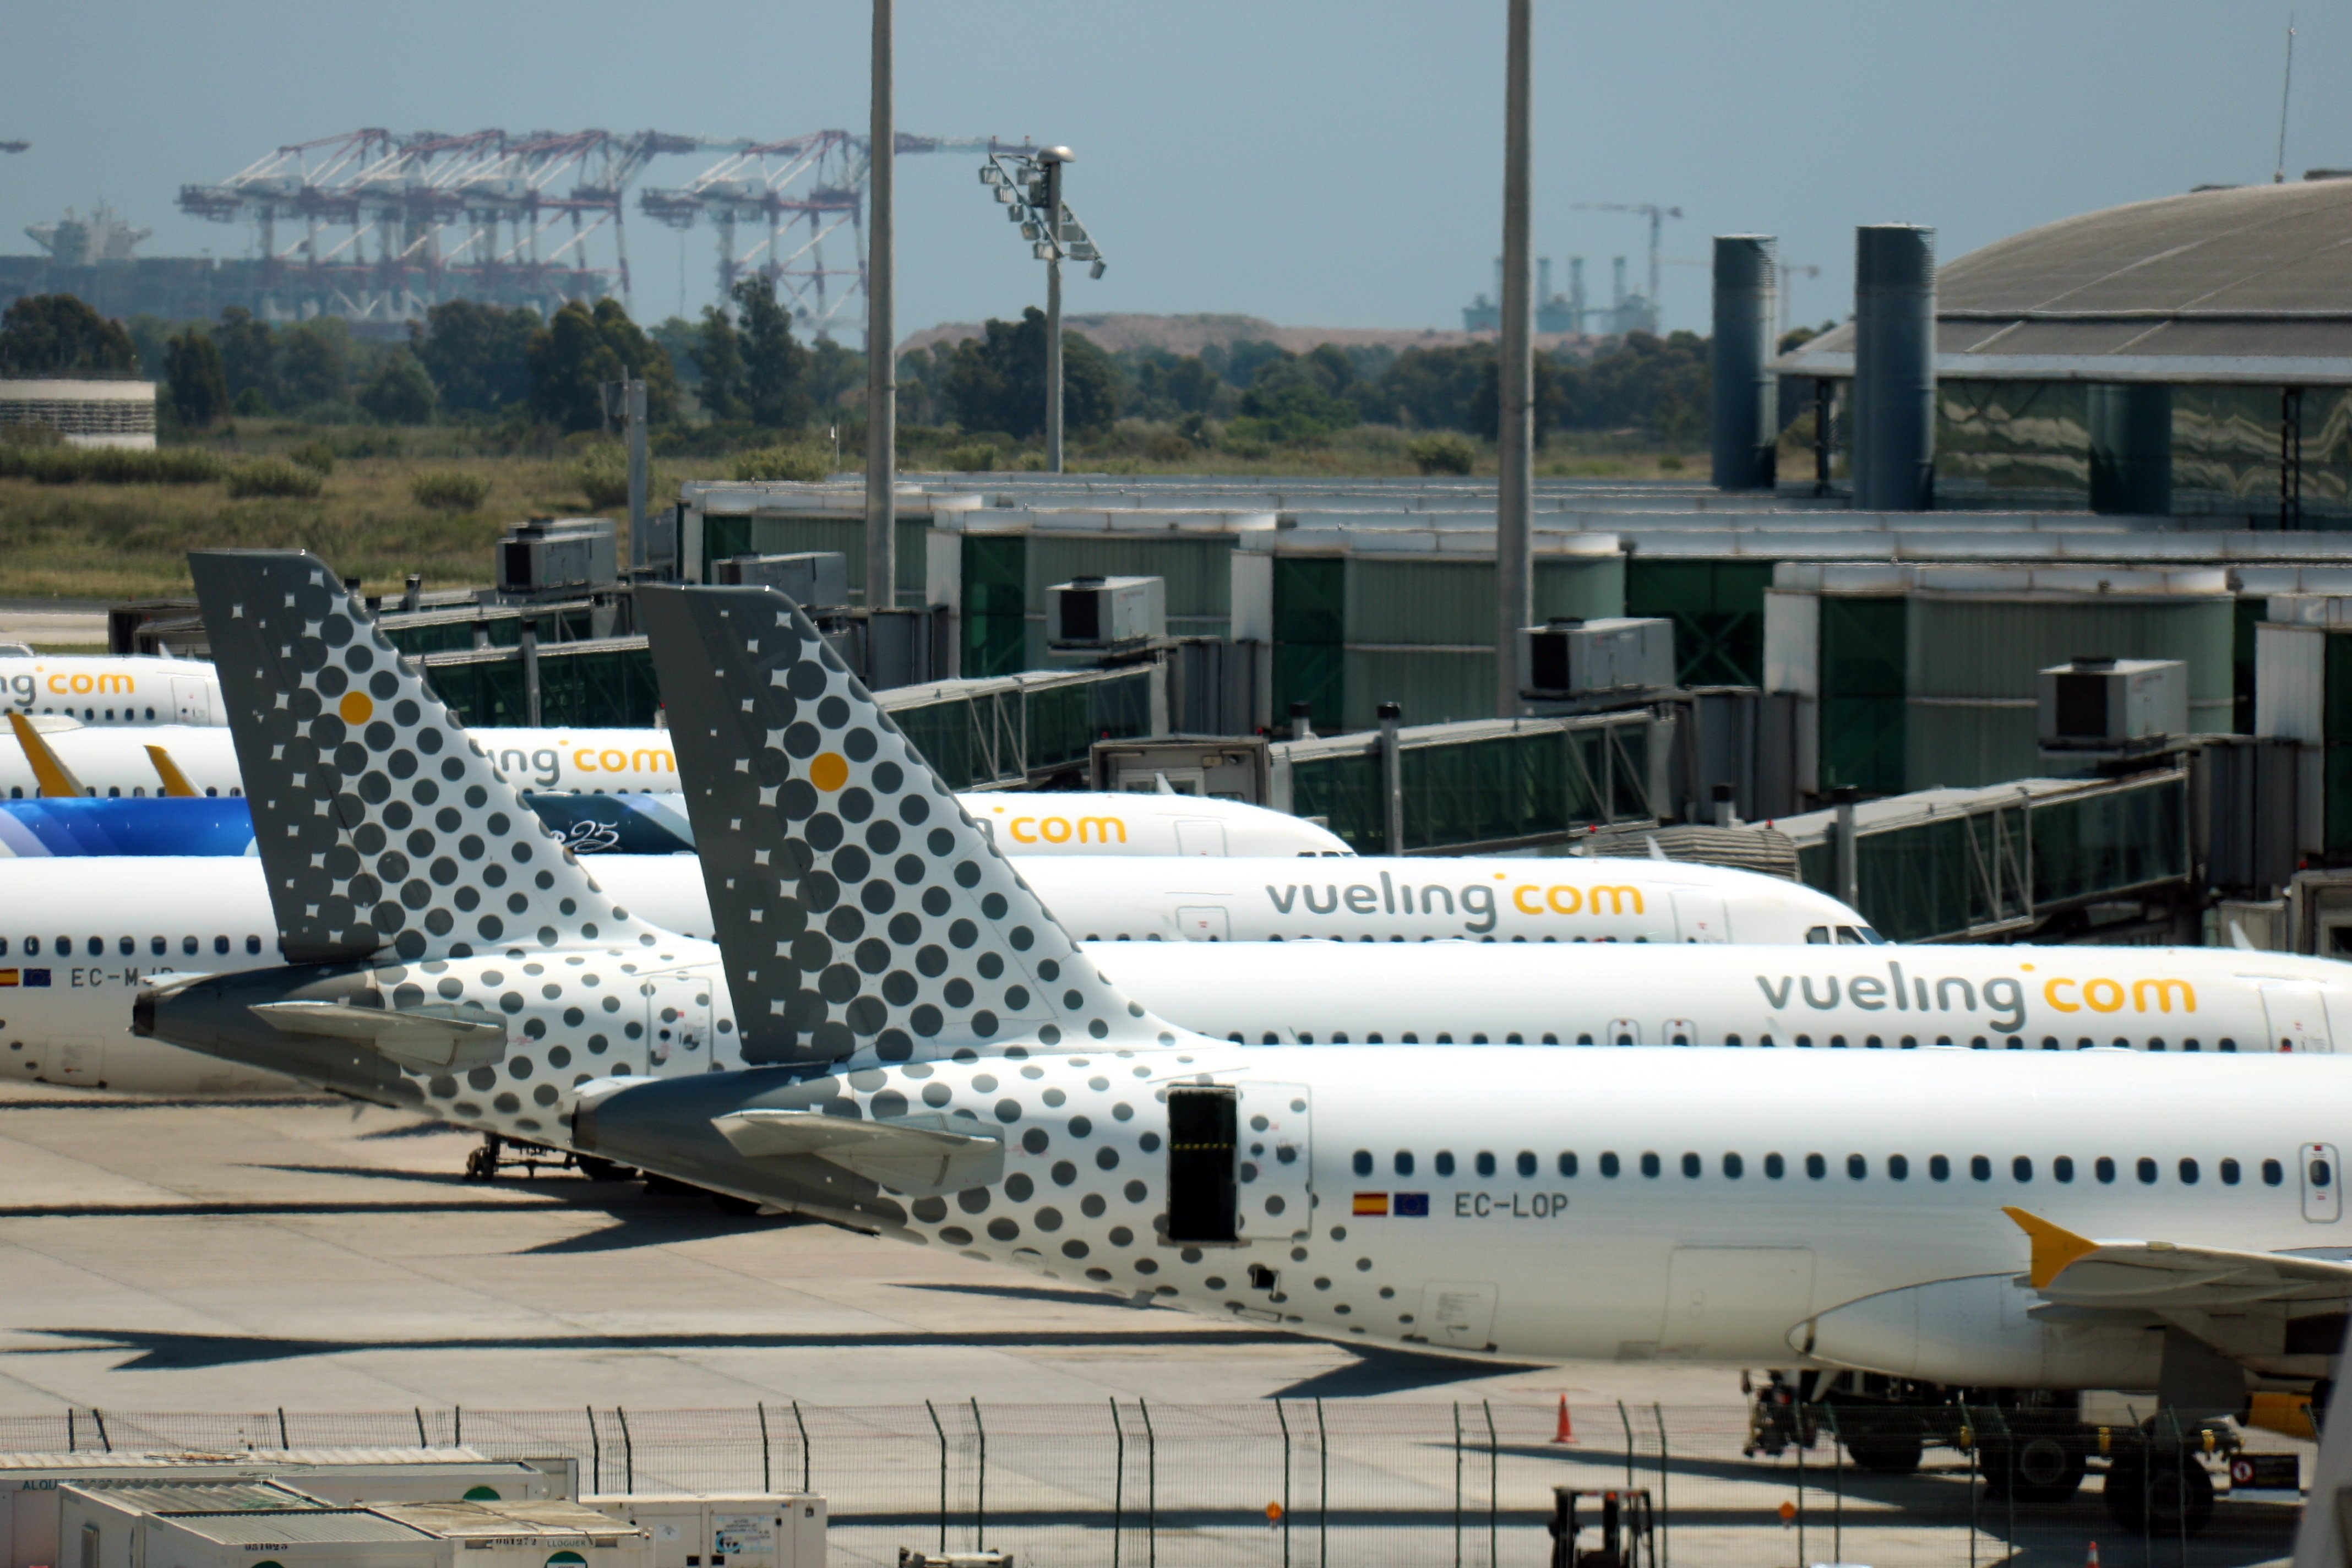 Vueling cancel·la 28 vols a l'aeroport del Prat davant la vaga de tripulants de cabina